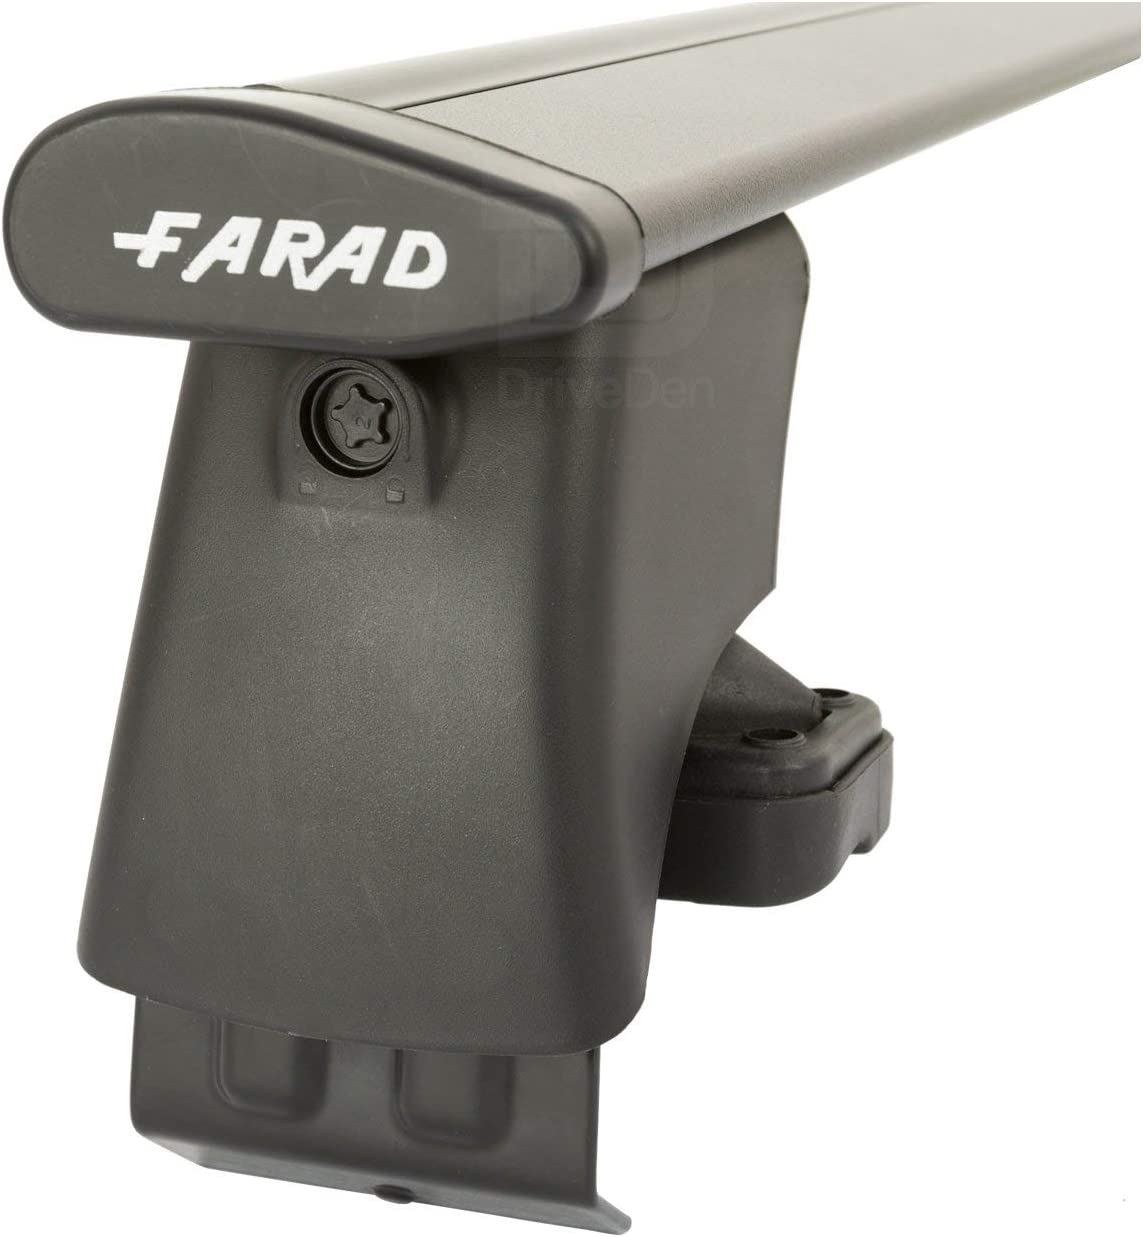 FARAD-Kit H2 per barre portatutto - Nissan Juke 2010-2019 (senza corrimano)